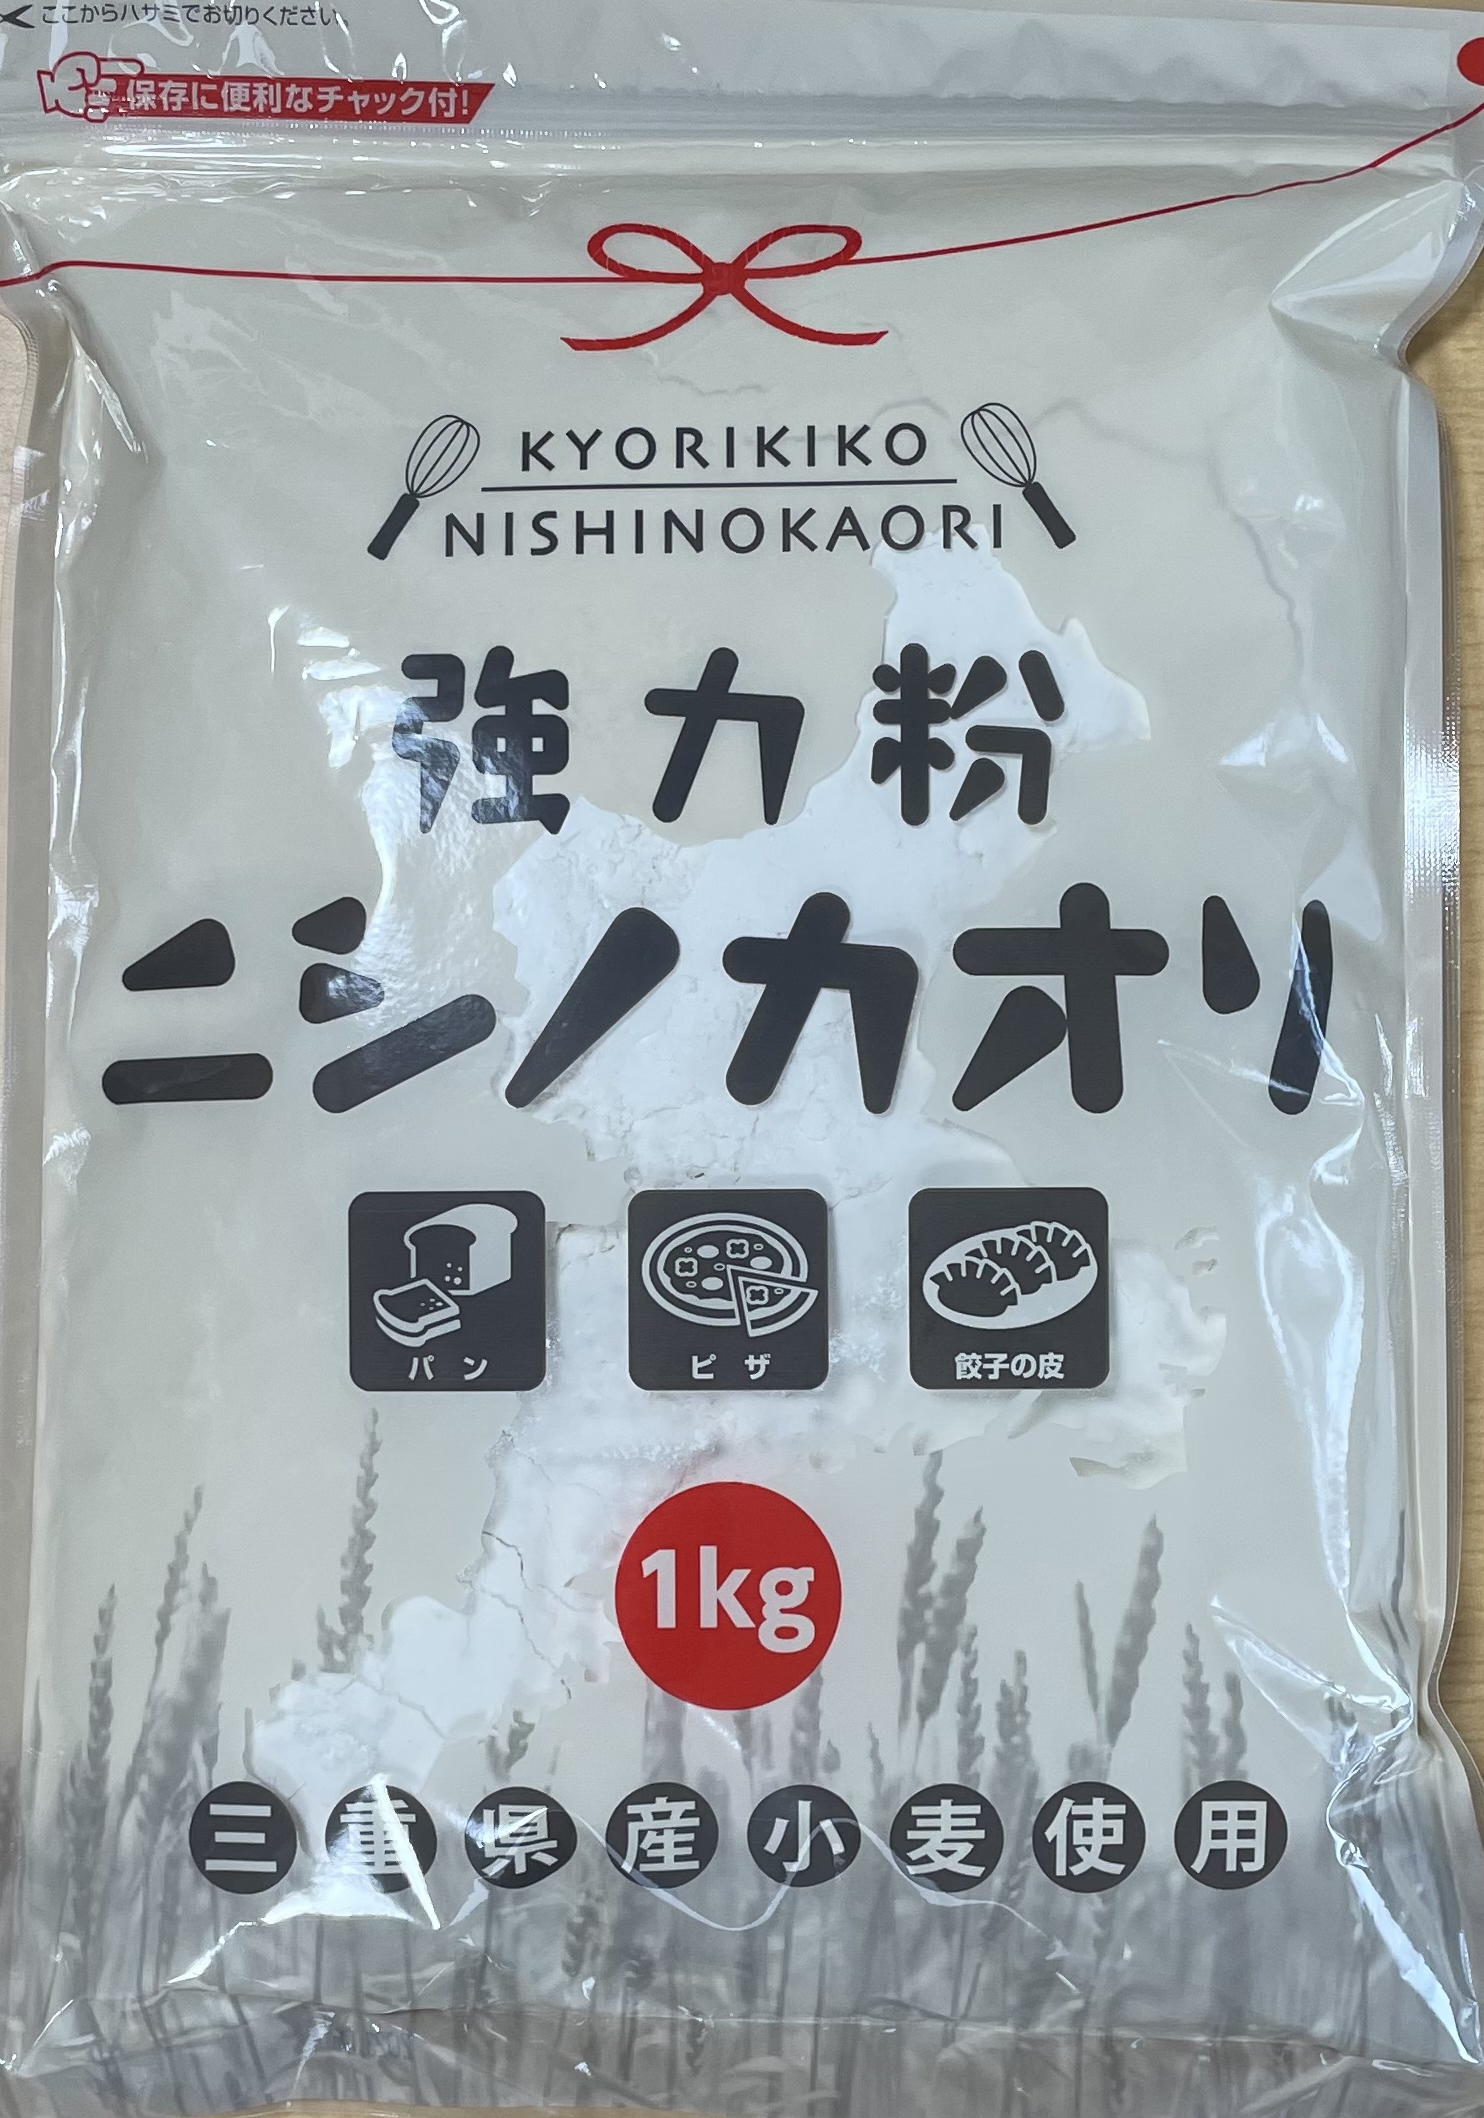 ニシノカオリ 1kg 10袋入り チャック袋 【平和製粉】【送料無料】